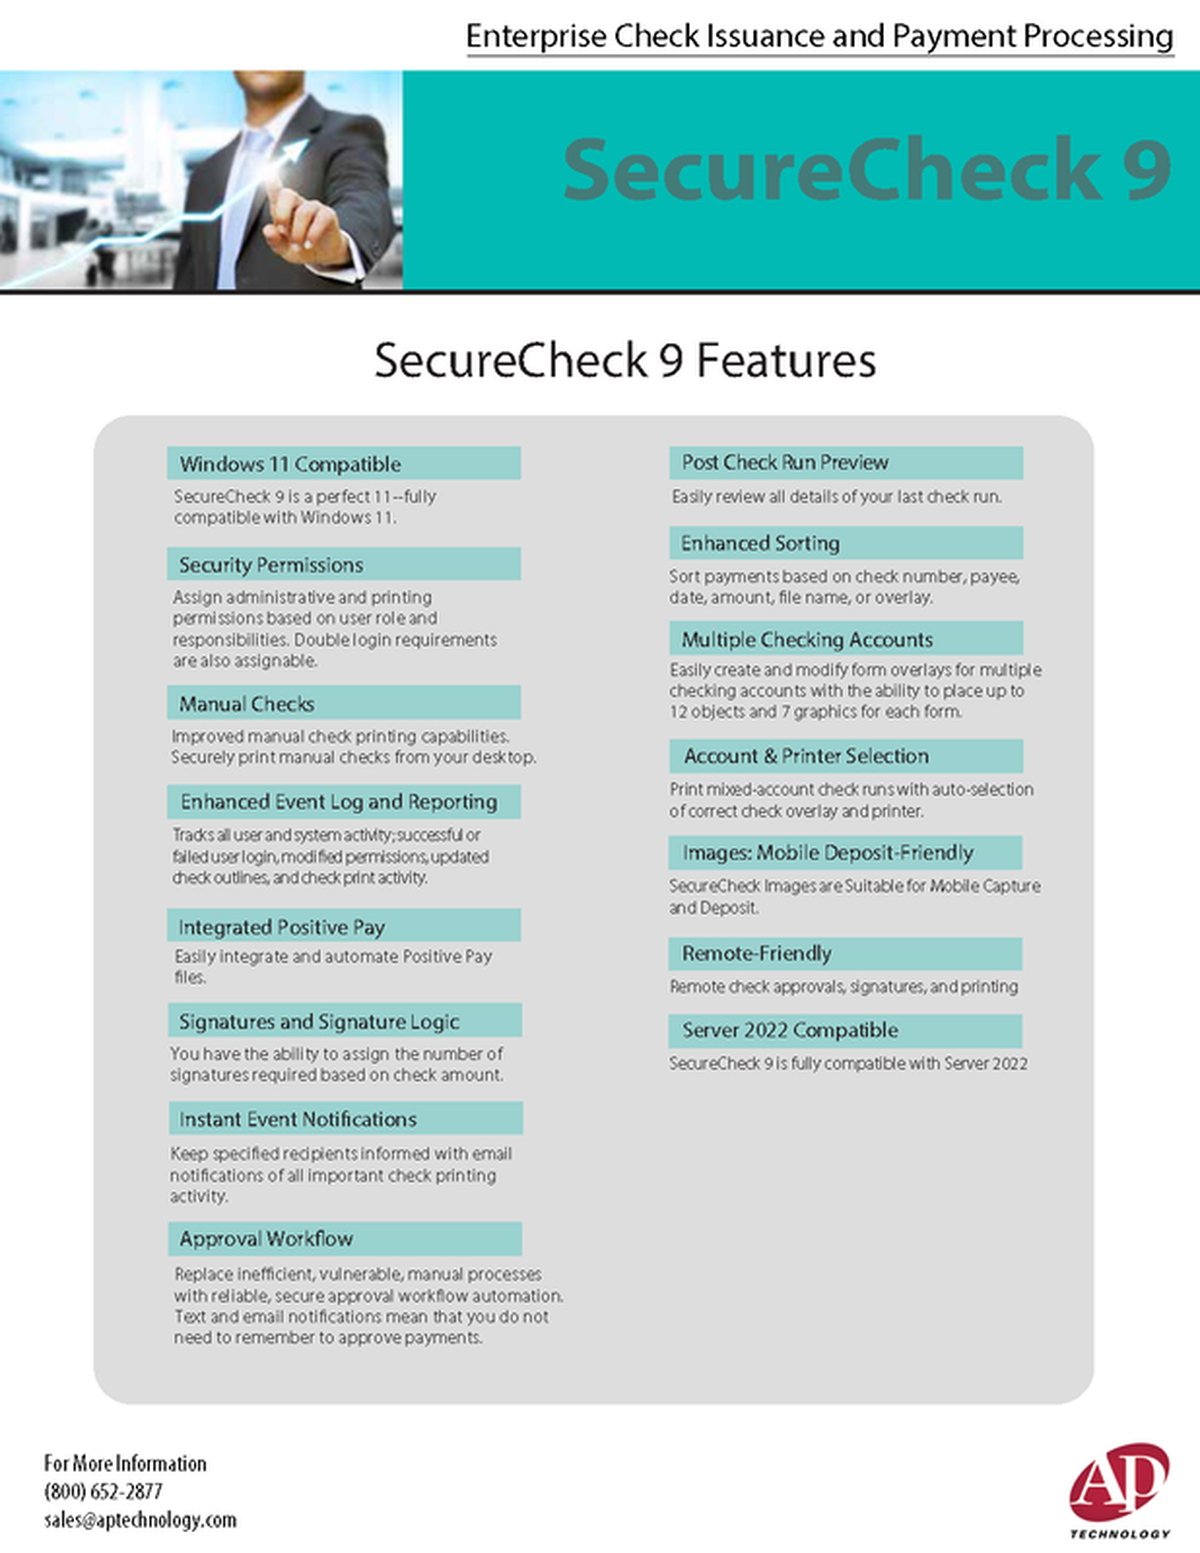 SecureCheck 9 Brochure - Features